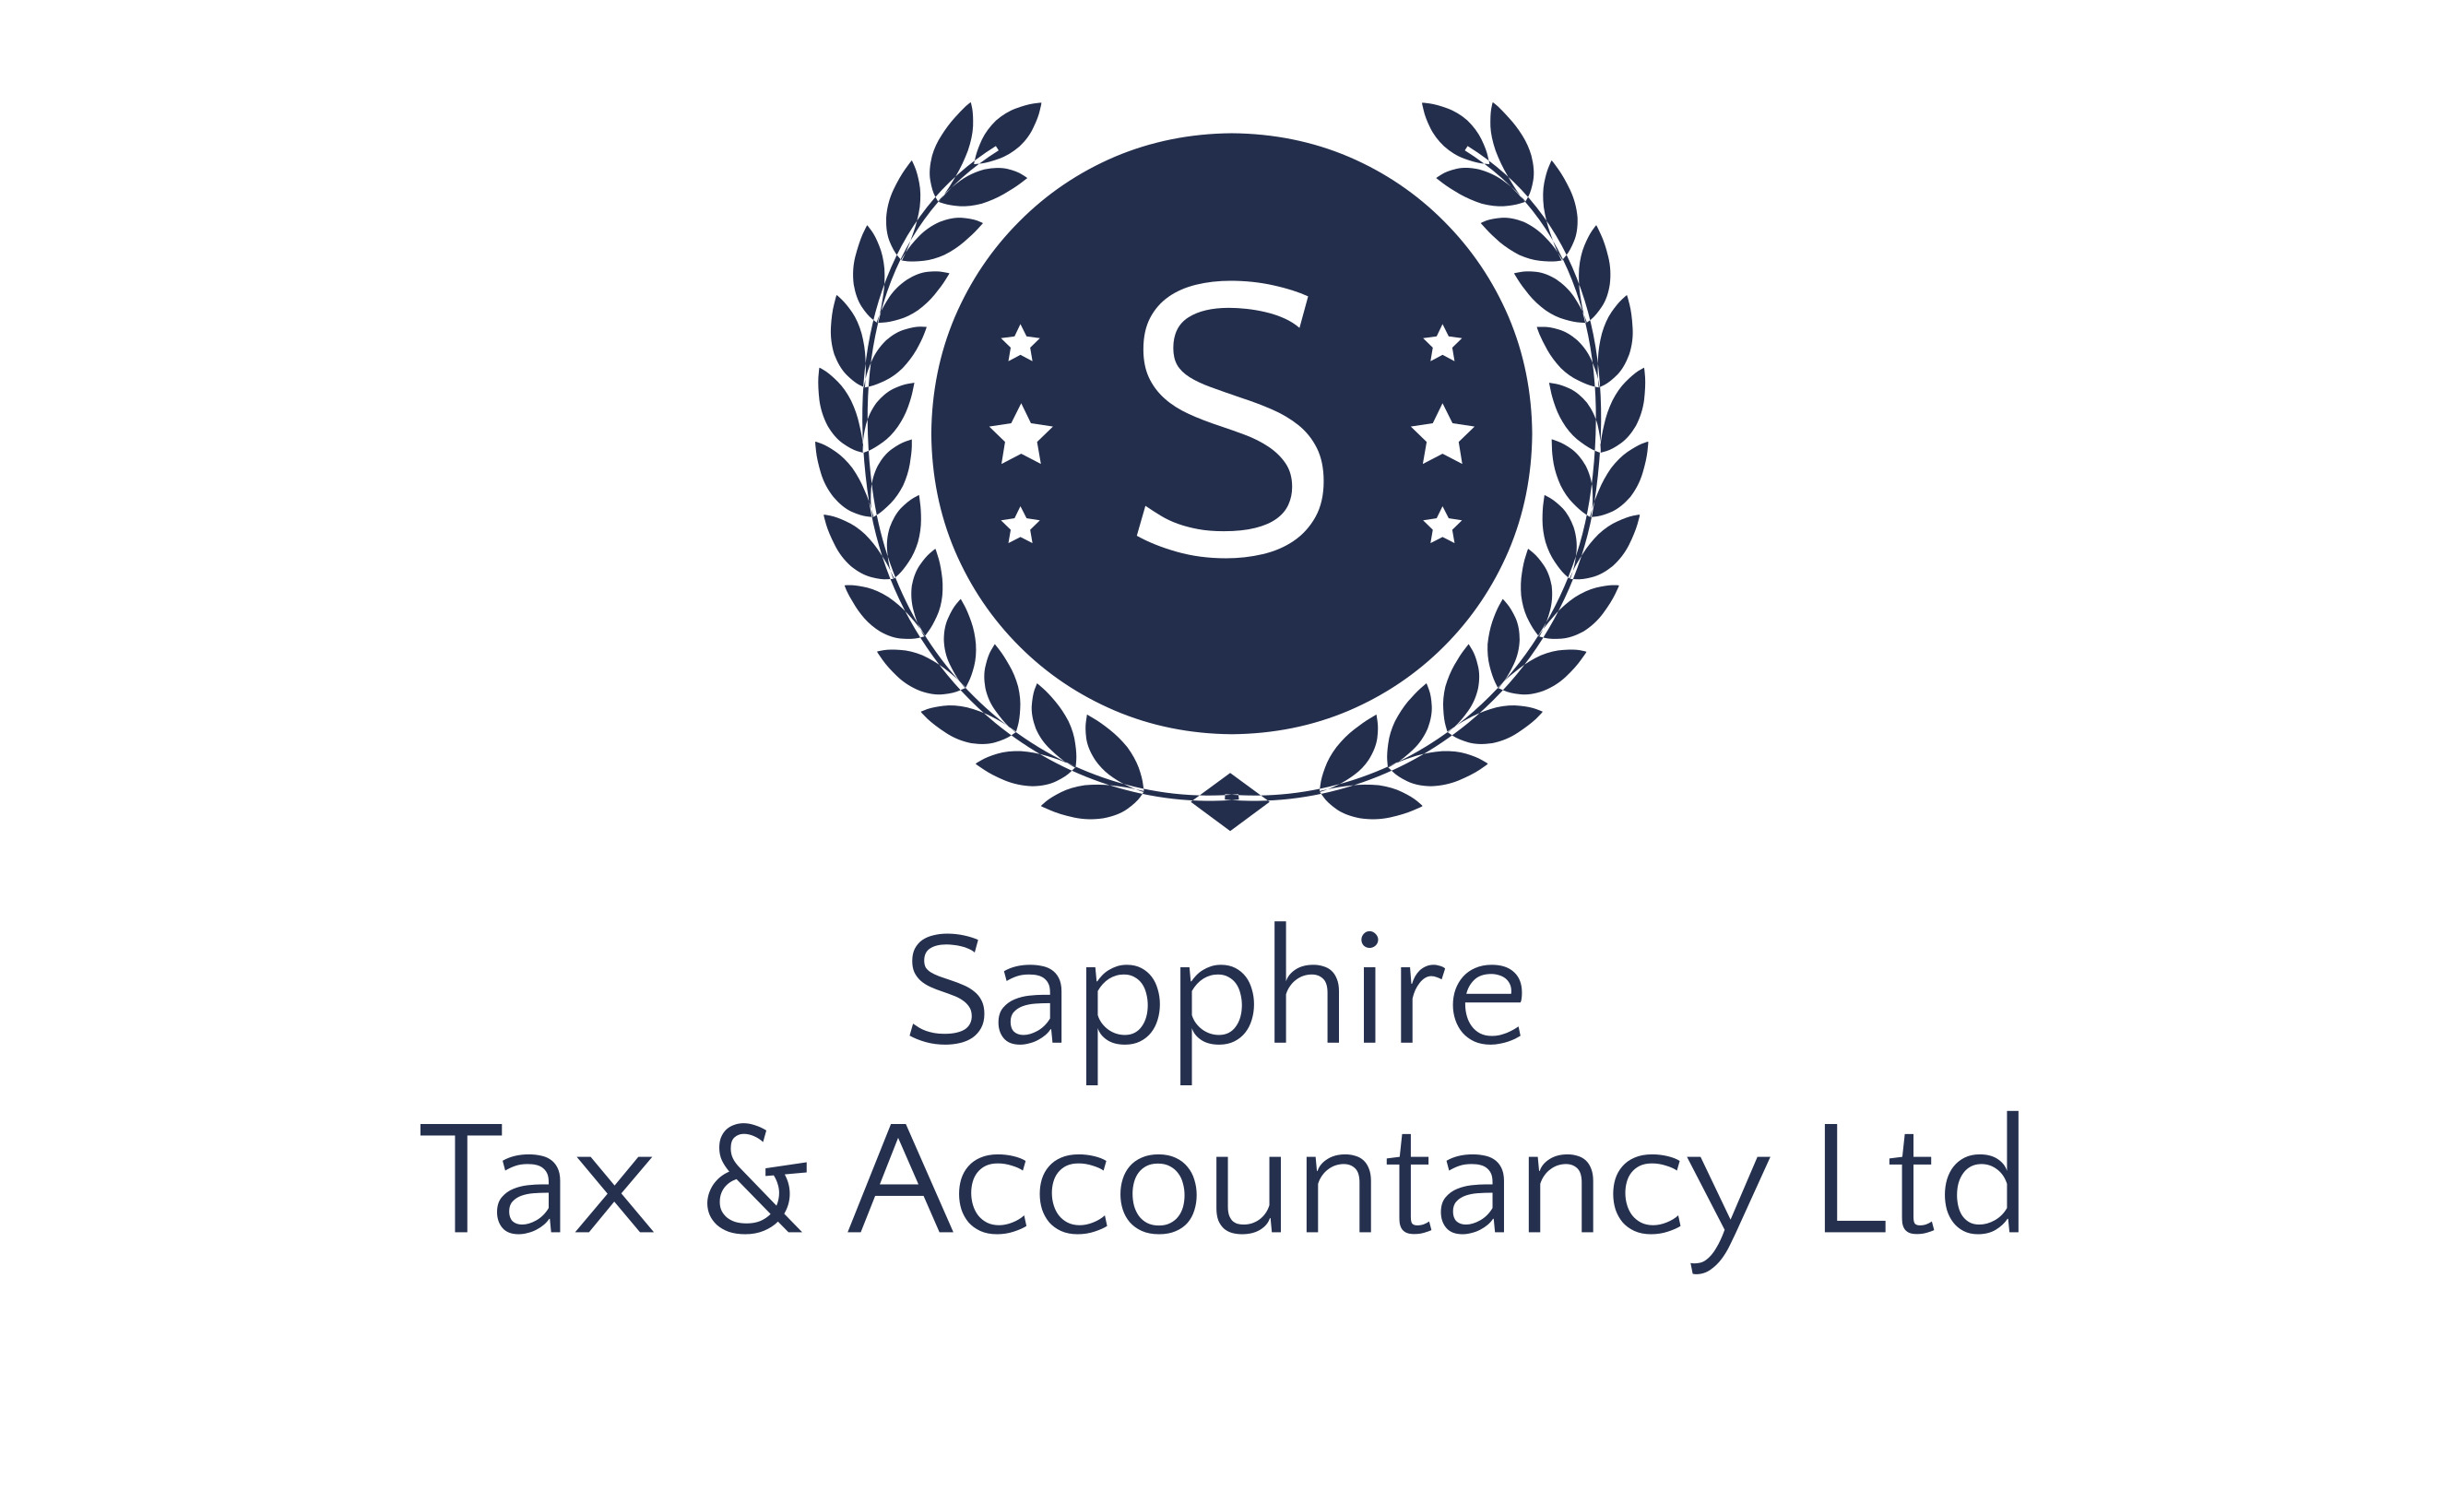 Sapphire Tax & Accountancy Ltd